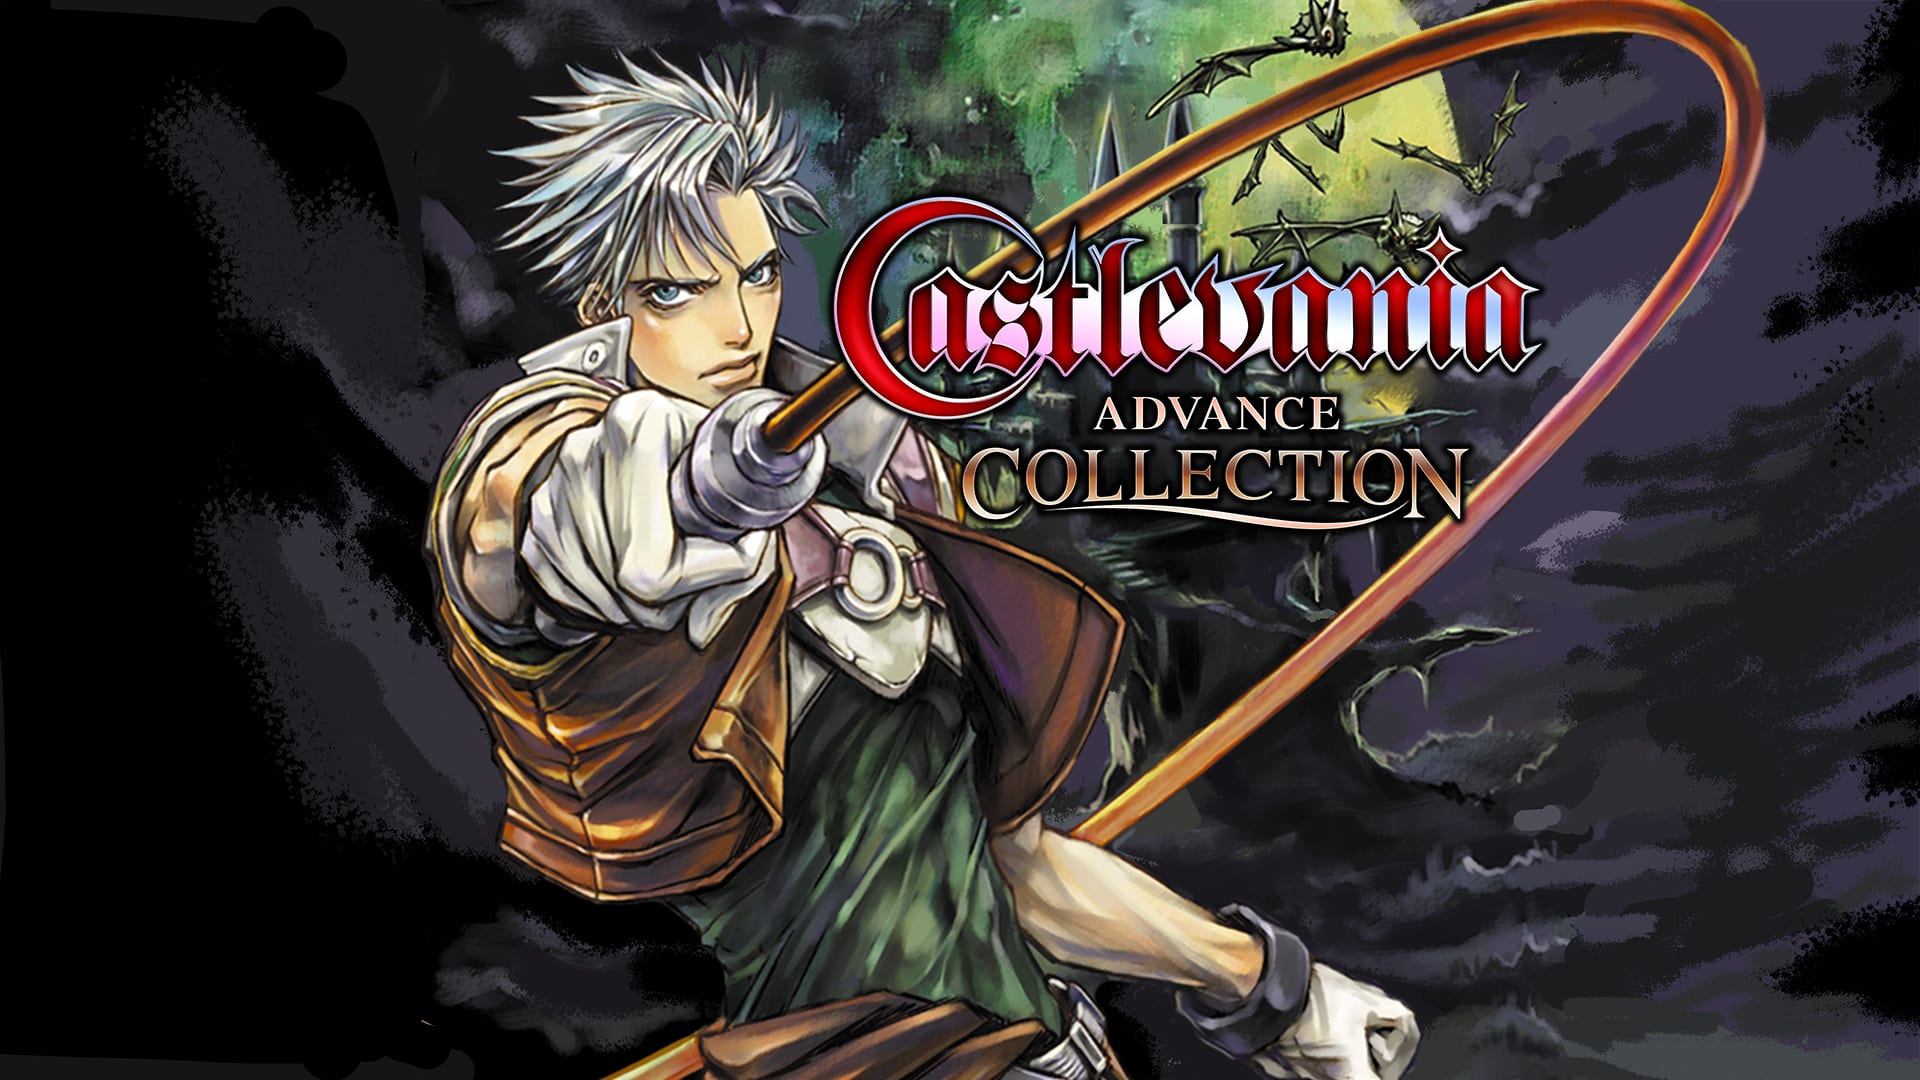 Castlevania Advance Collection 1